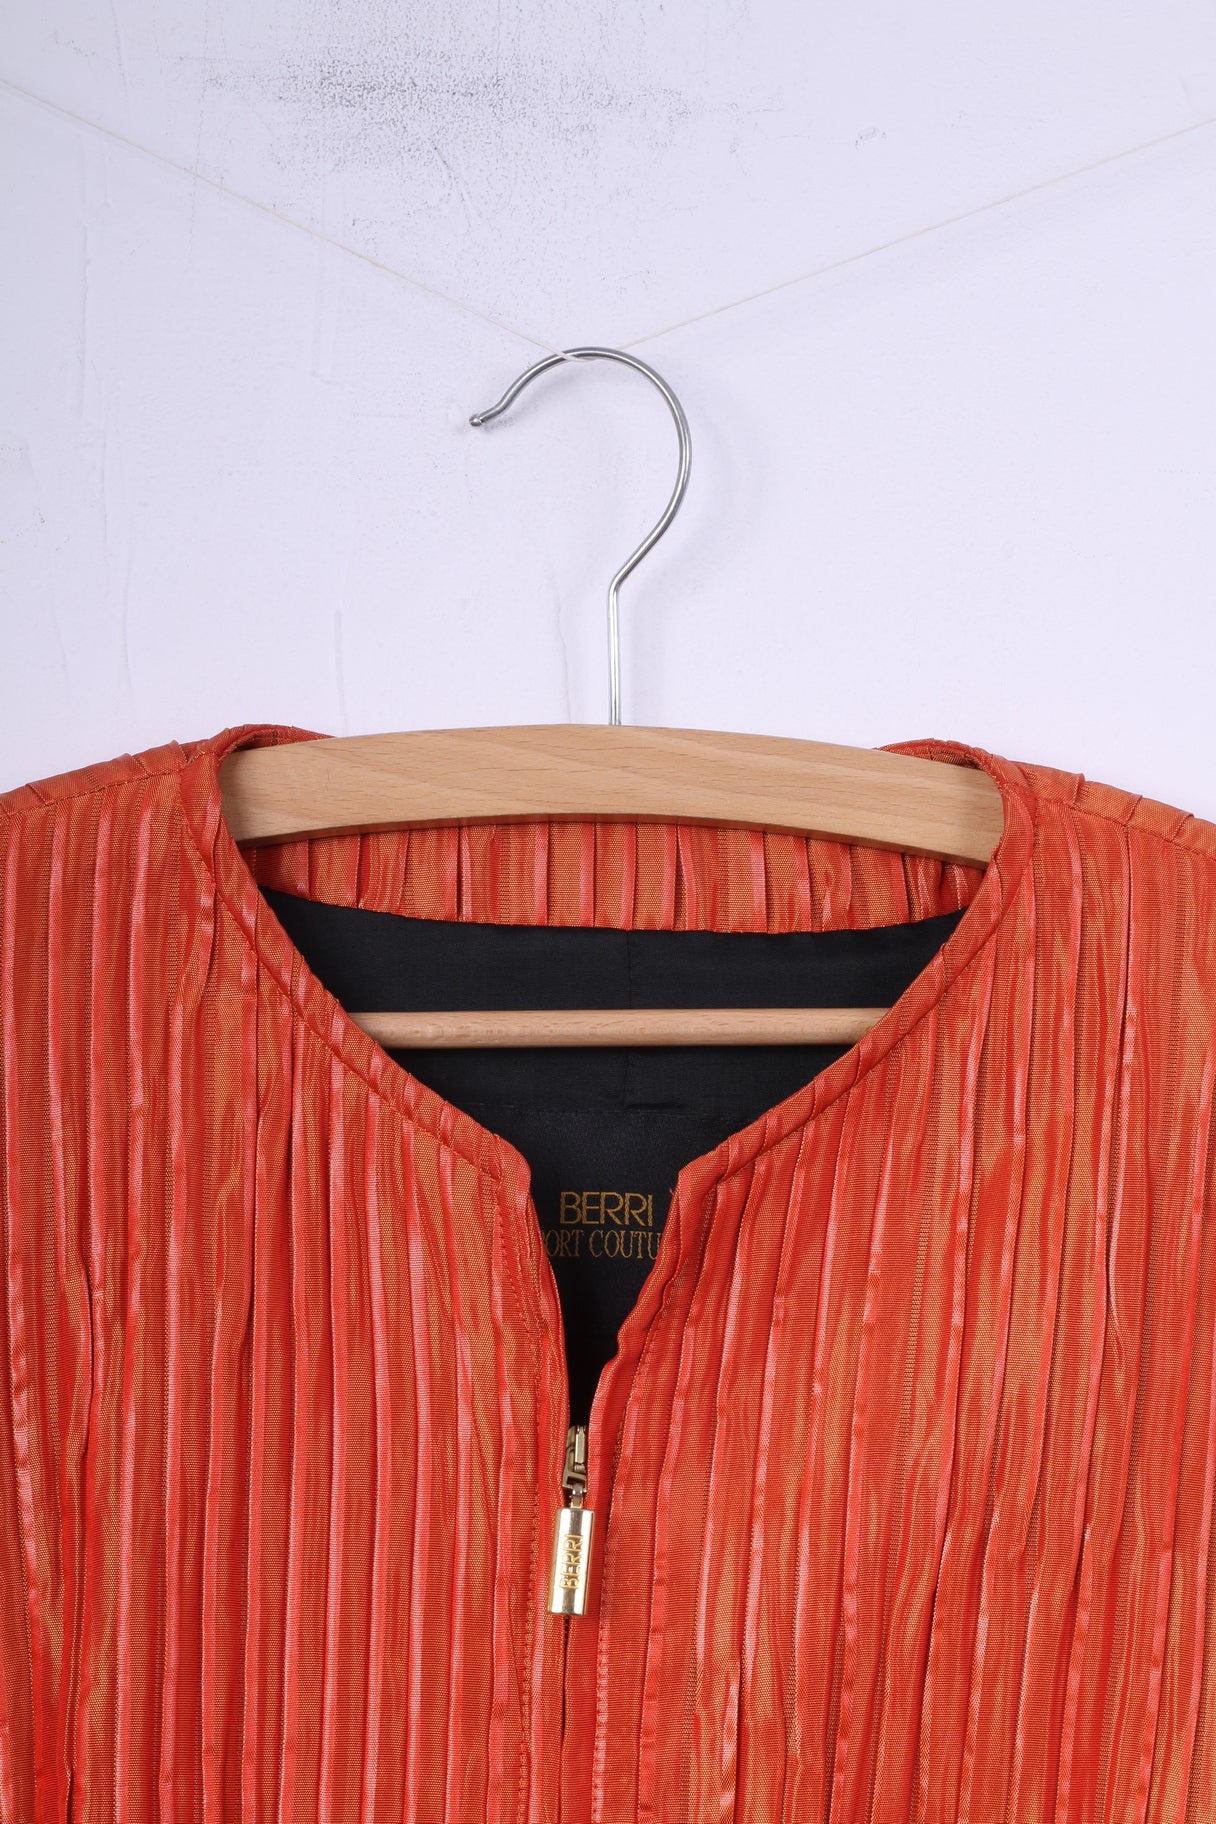 Berri Sport Couture Veste zippée orange pour femme 40 M